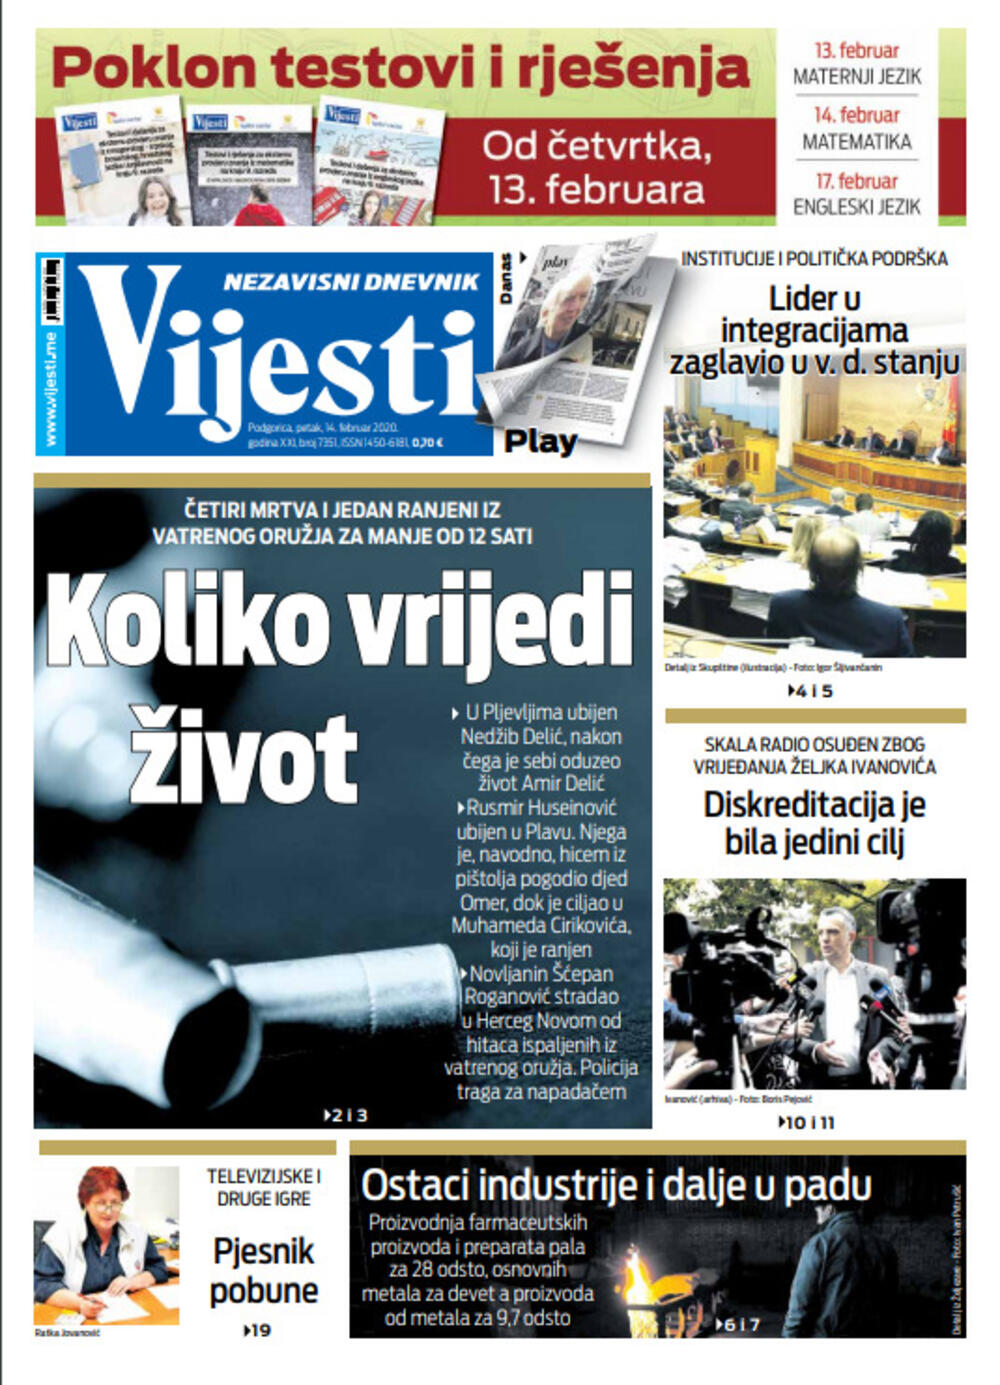 Naslovna strana "Vijesti" za 14. februar 2020. godine, Foto: Vijesti